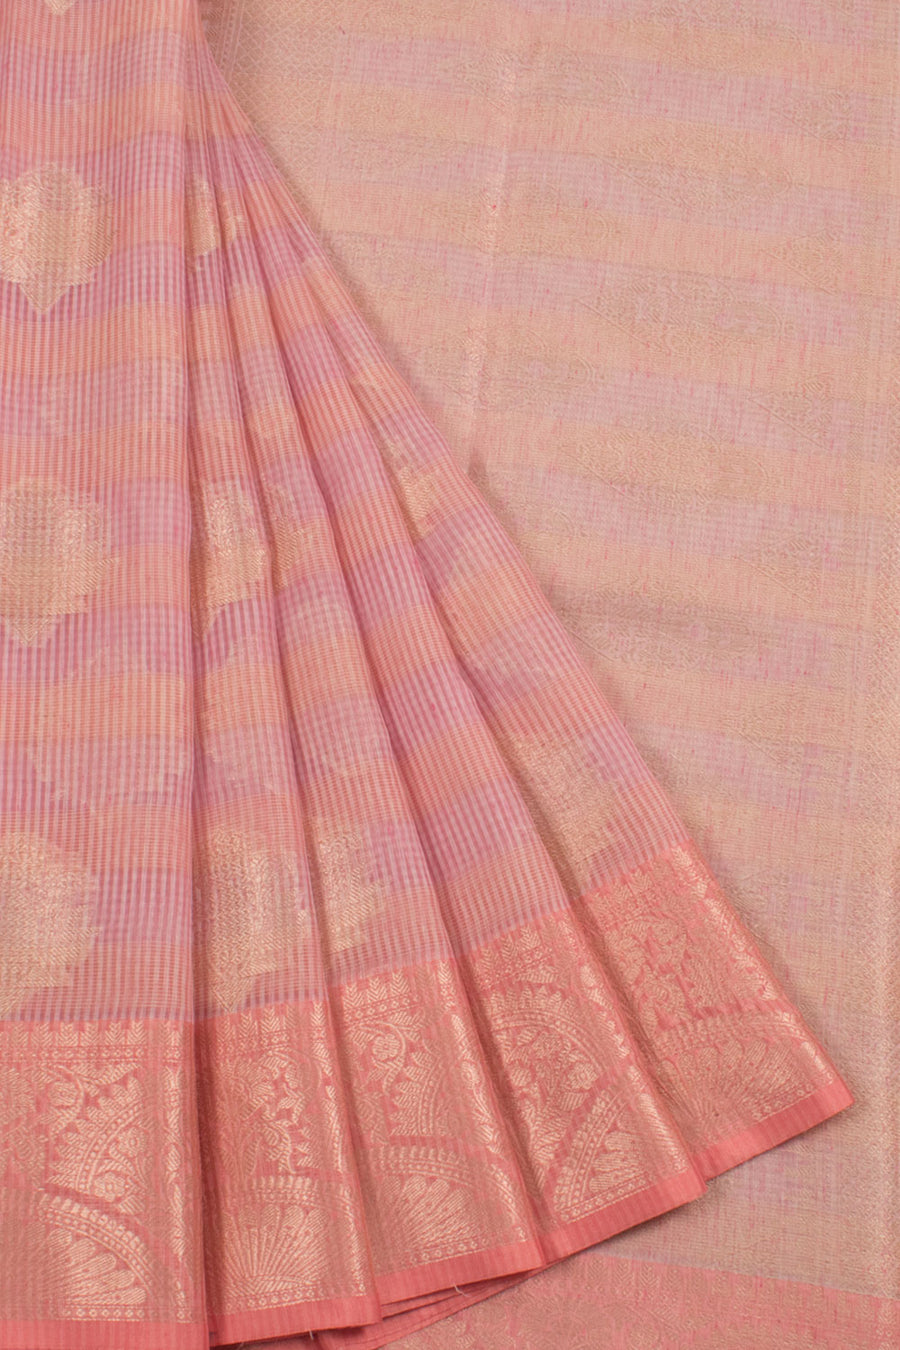 Banarasi Cotton Saree with Stripes Design and Floral Motifs